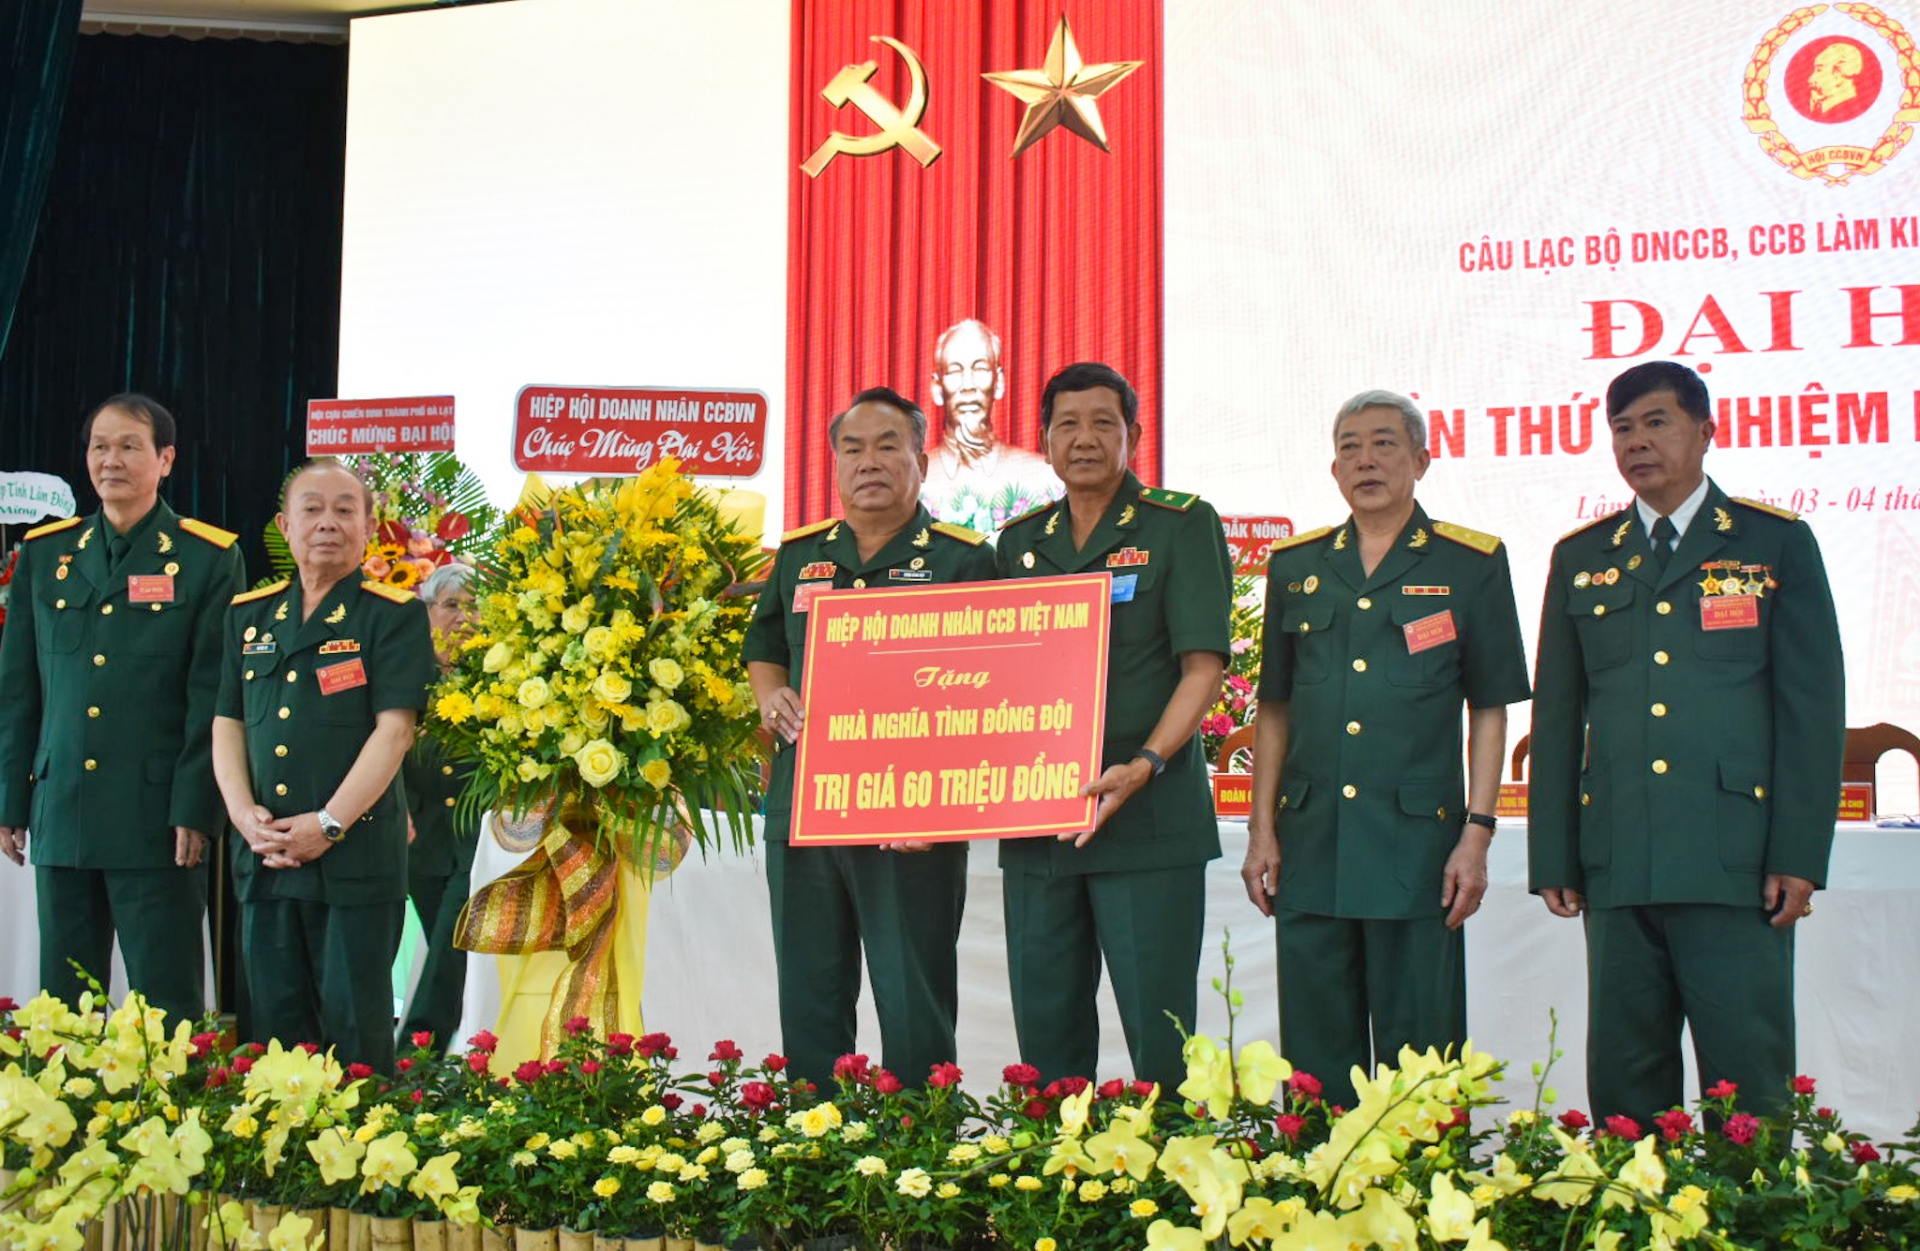 Hiệp Hội Doanh nhân CCB Việt Nam tặng nhà nghĩa tình đồng đội cho CLB 